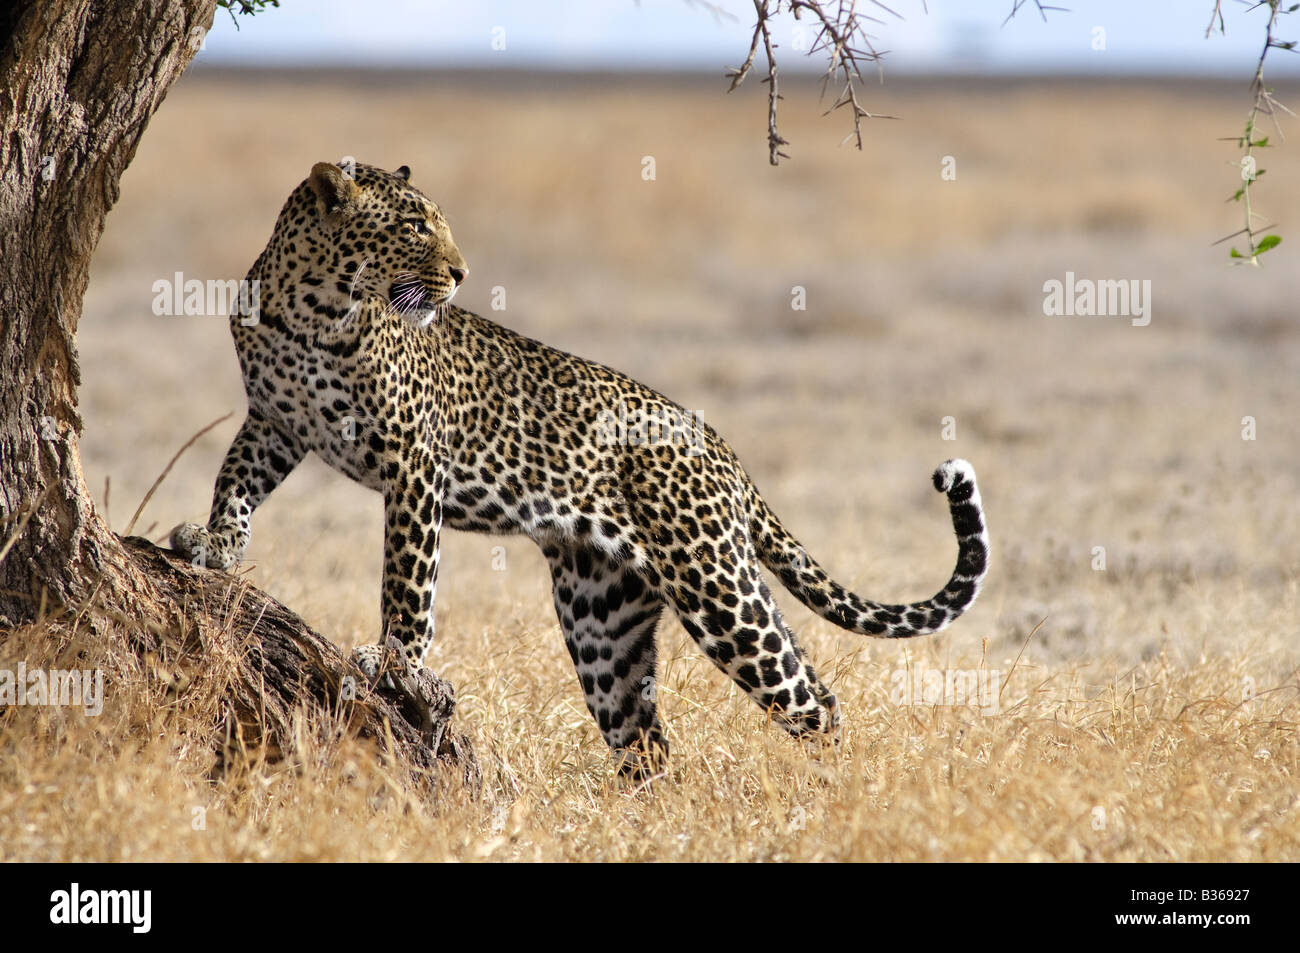 African Leopard, male attempting to climb into a tree (Panthera pardus), Ndutu, Ngorongoro, Tanzania Stock Photo